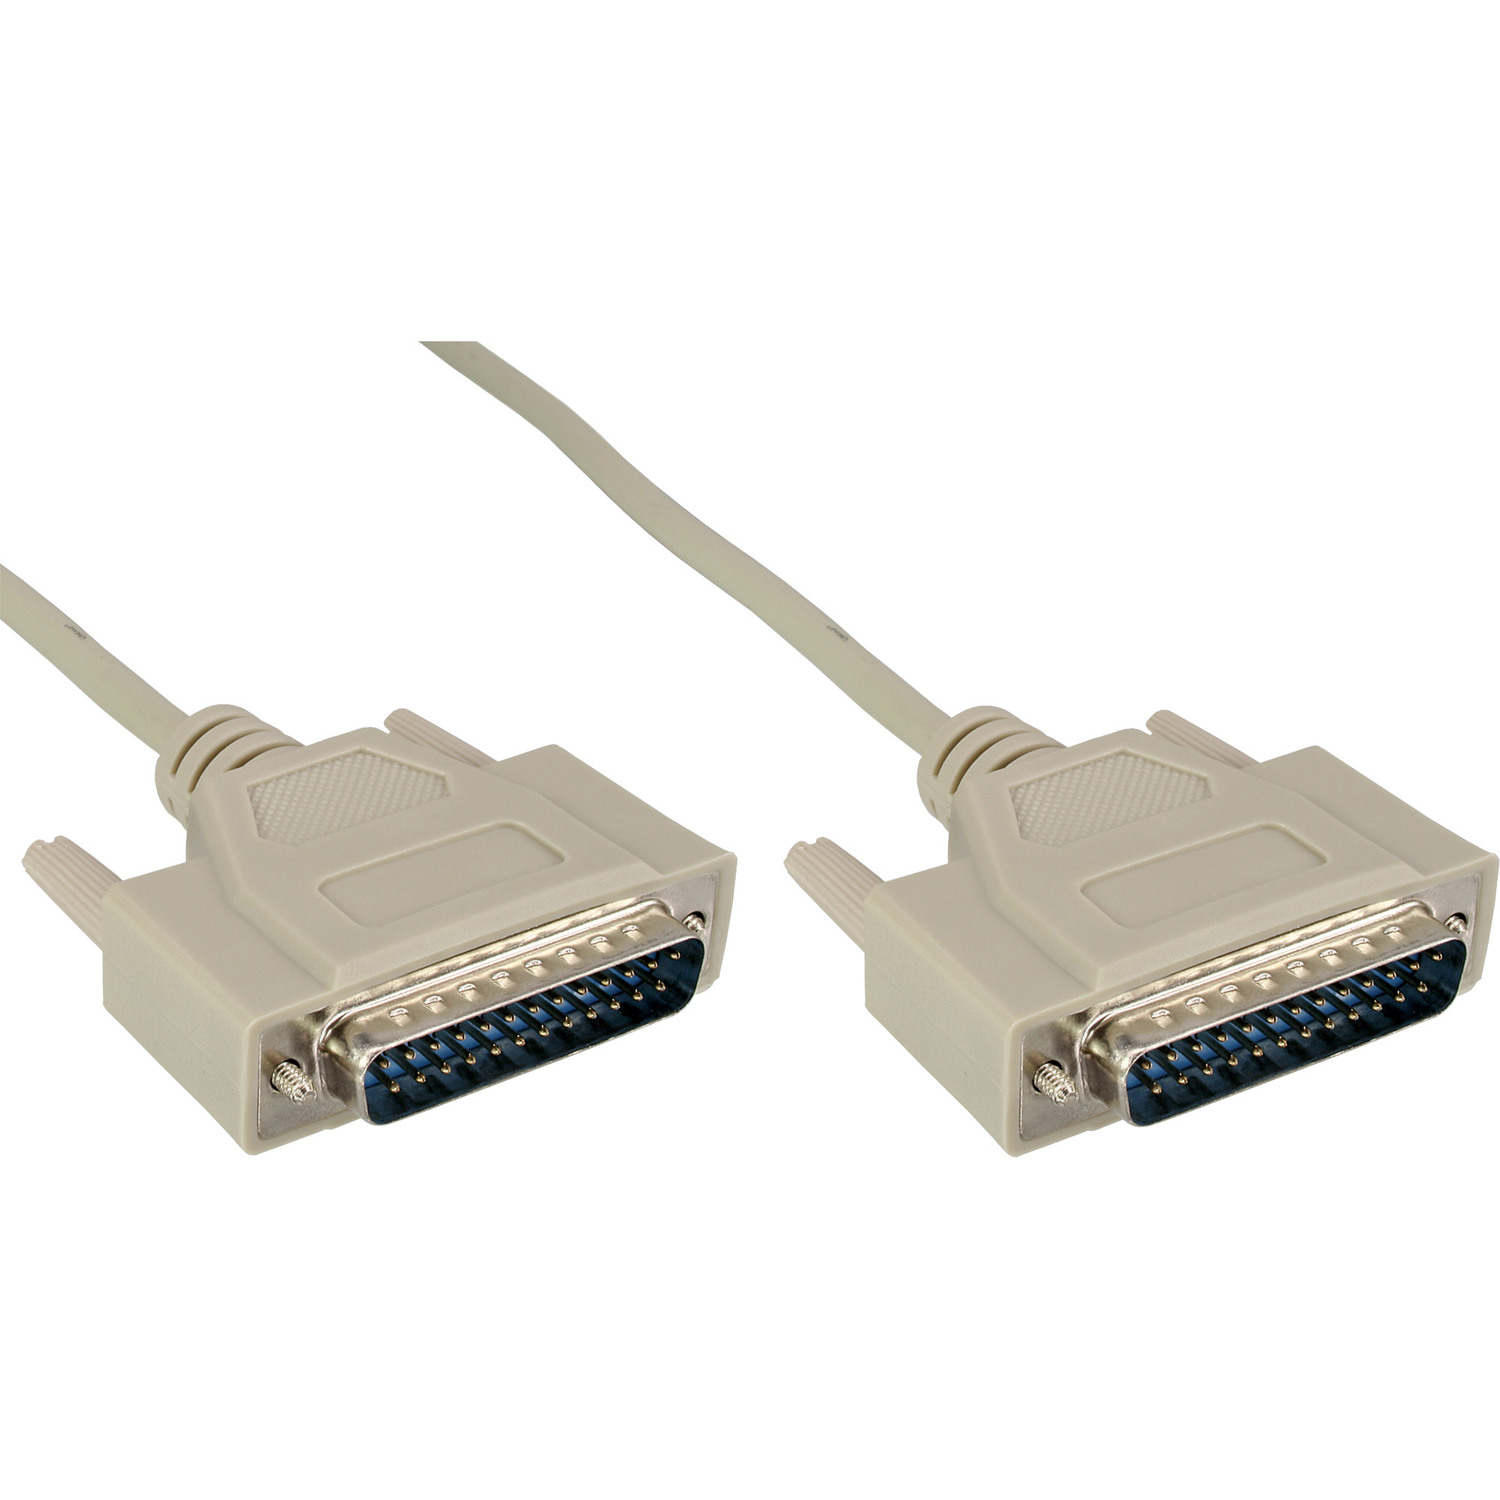 INLINE InLine® Serielles Kabel, 25pol Parallel, Seriell / Stecker, beige 1:1 / 10m vergossen, Stecker